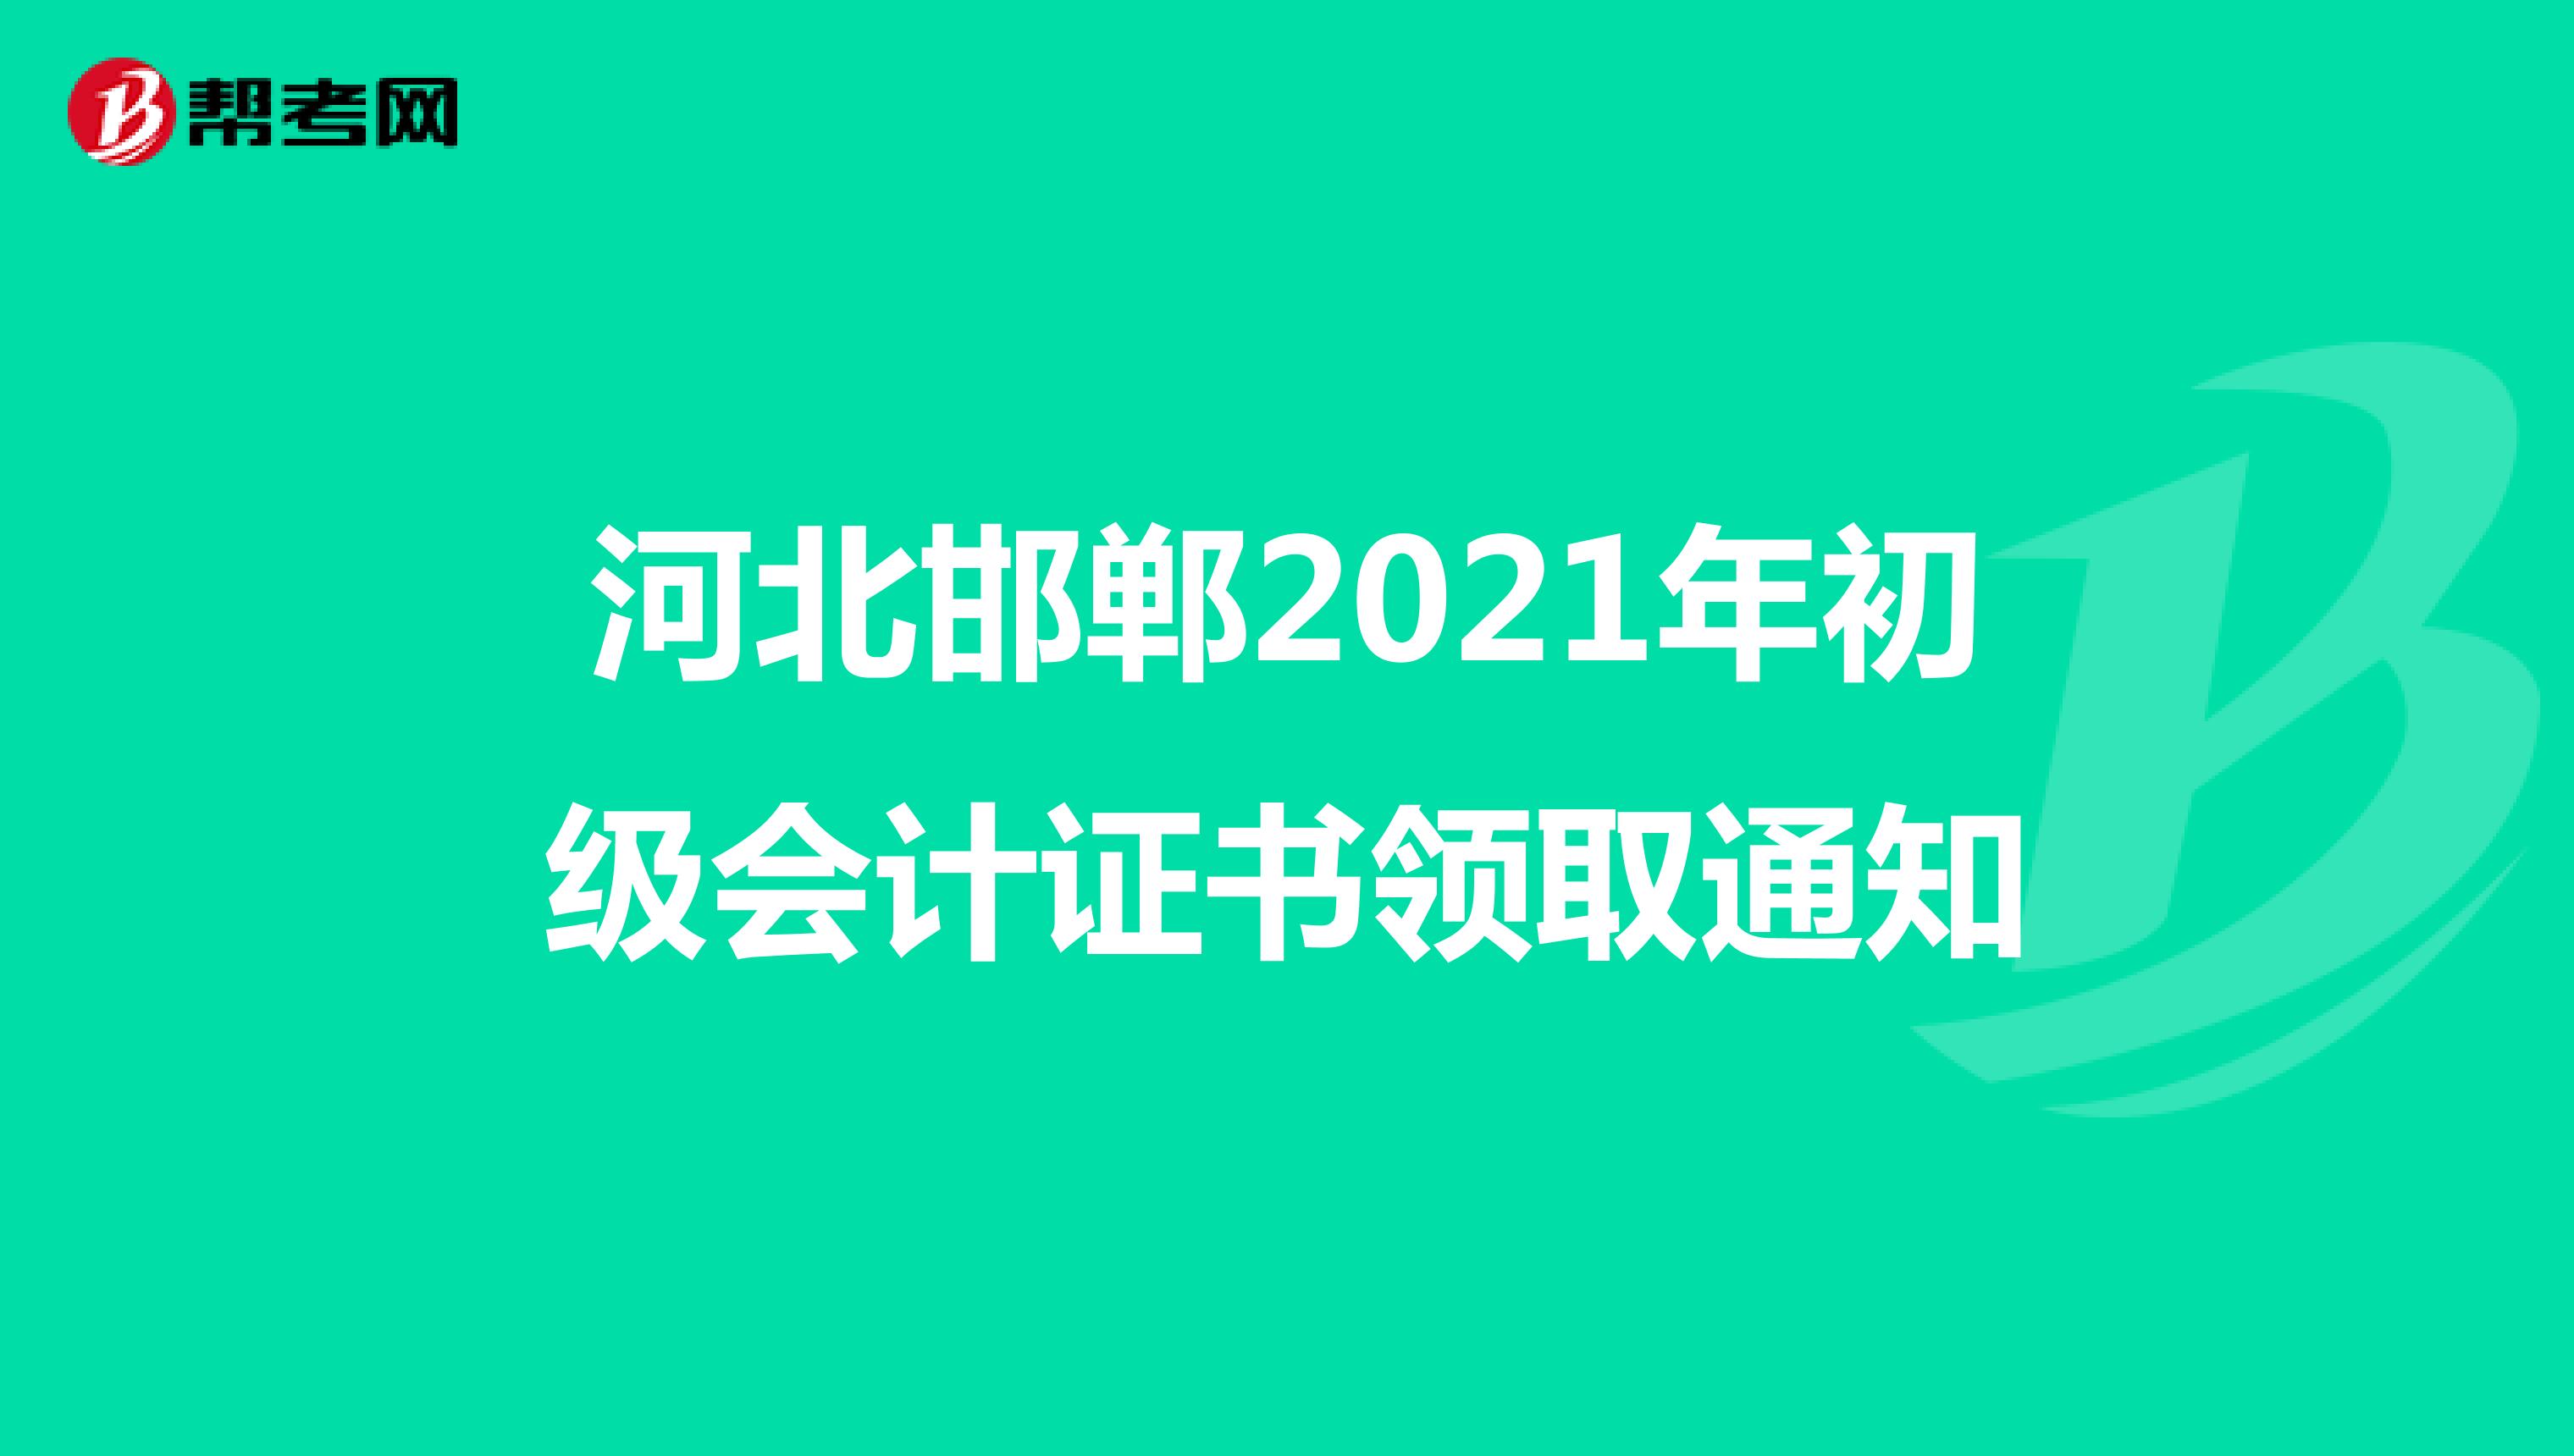 河北邯郸2021年初级会计证书领取通知